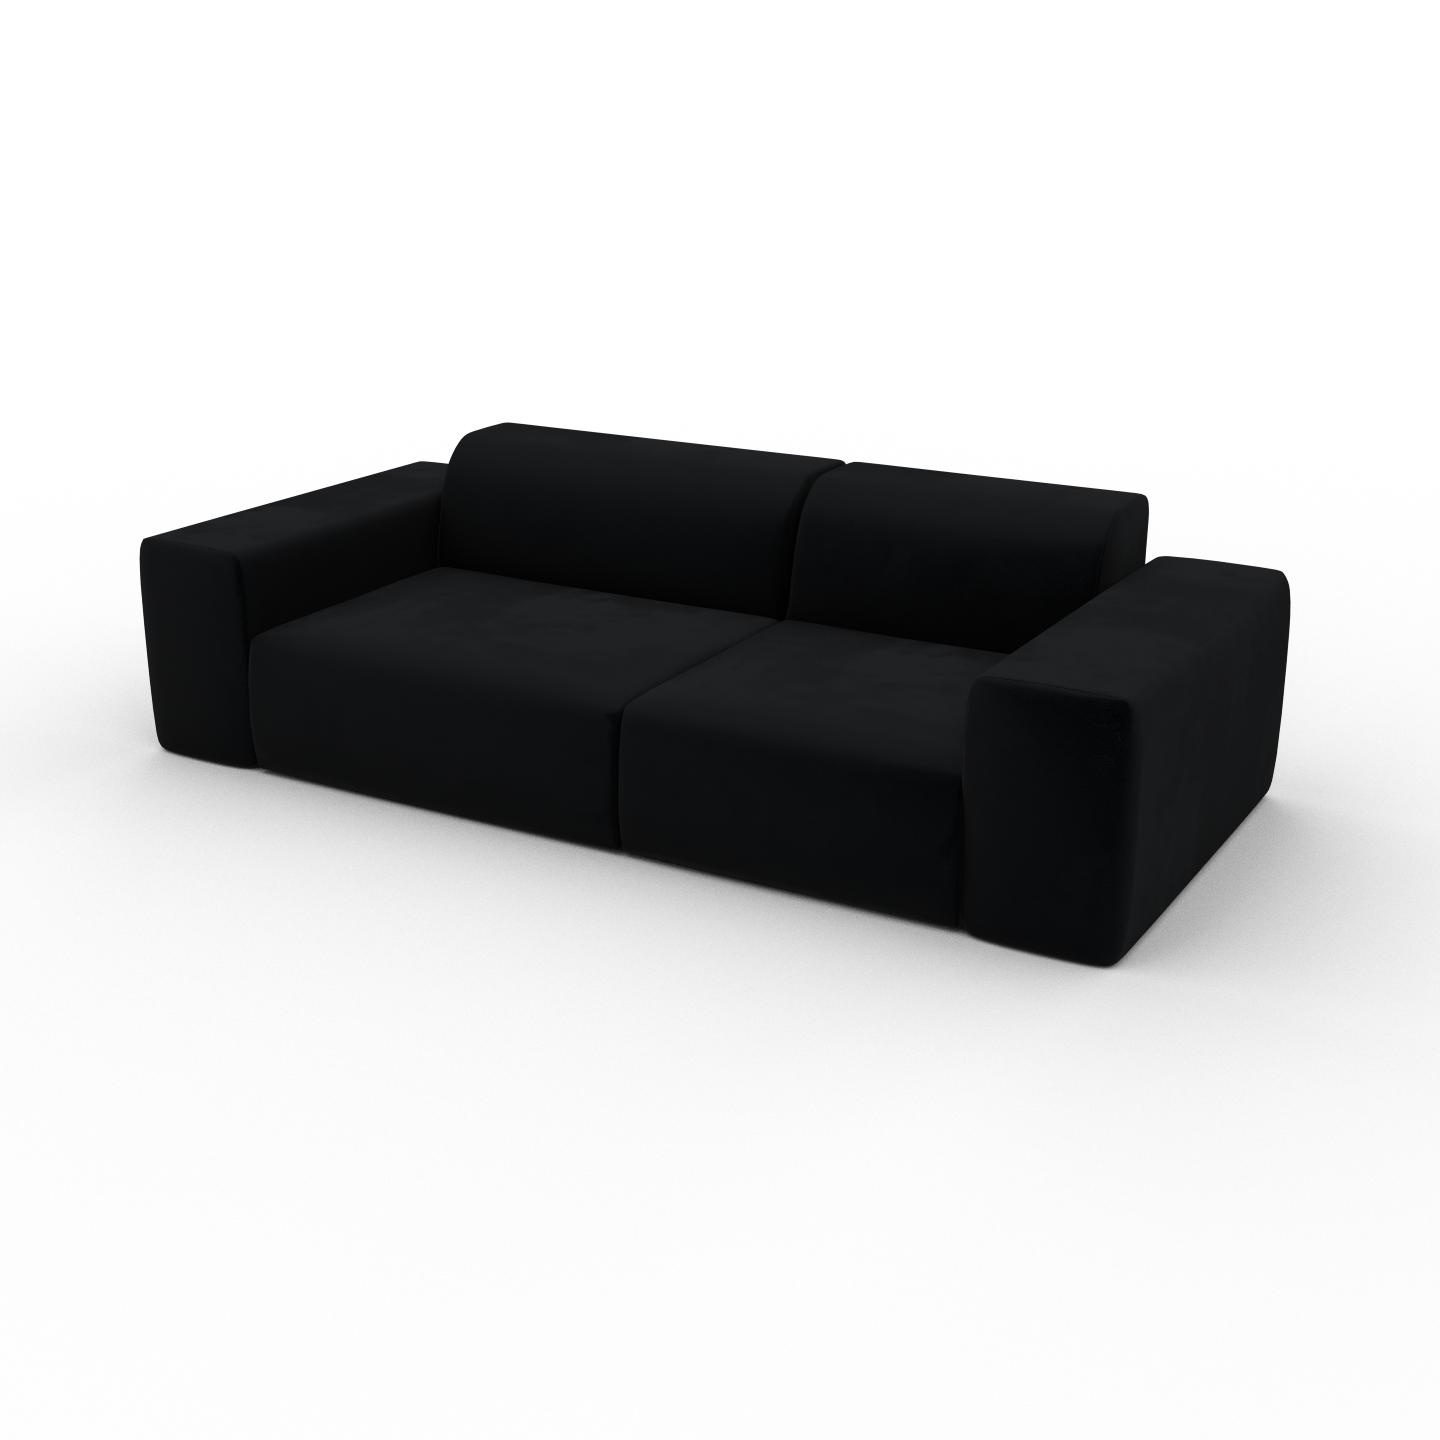 MYCS Sofa Samt Schwarz - Moderne Designer-Couch: Hochwertige Qualität, einzigartiges Design - 241 x 72 x 107 cm, Komplett anpassbar